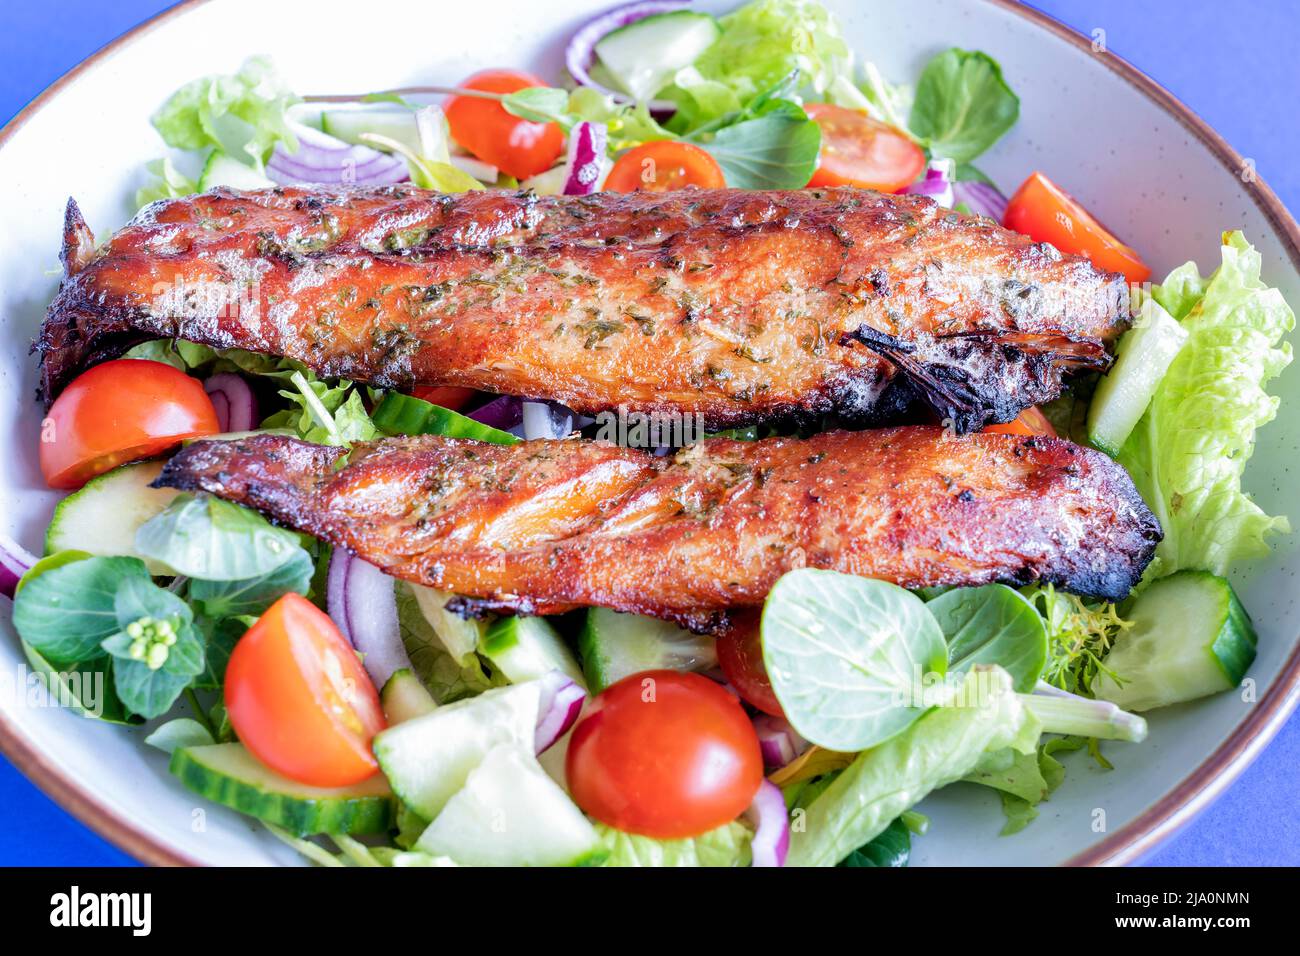 Zwei frisch gekochte geräucherte Makrelenfischfilets mit einem frischen Salat. Der fetthaltige Fisch ist eine gute gesunde Mahlzeit Option, die reich an Omega-3-Fettsäuren ist Stockfoto